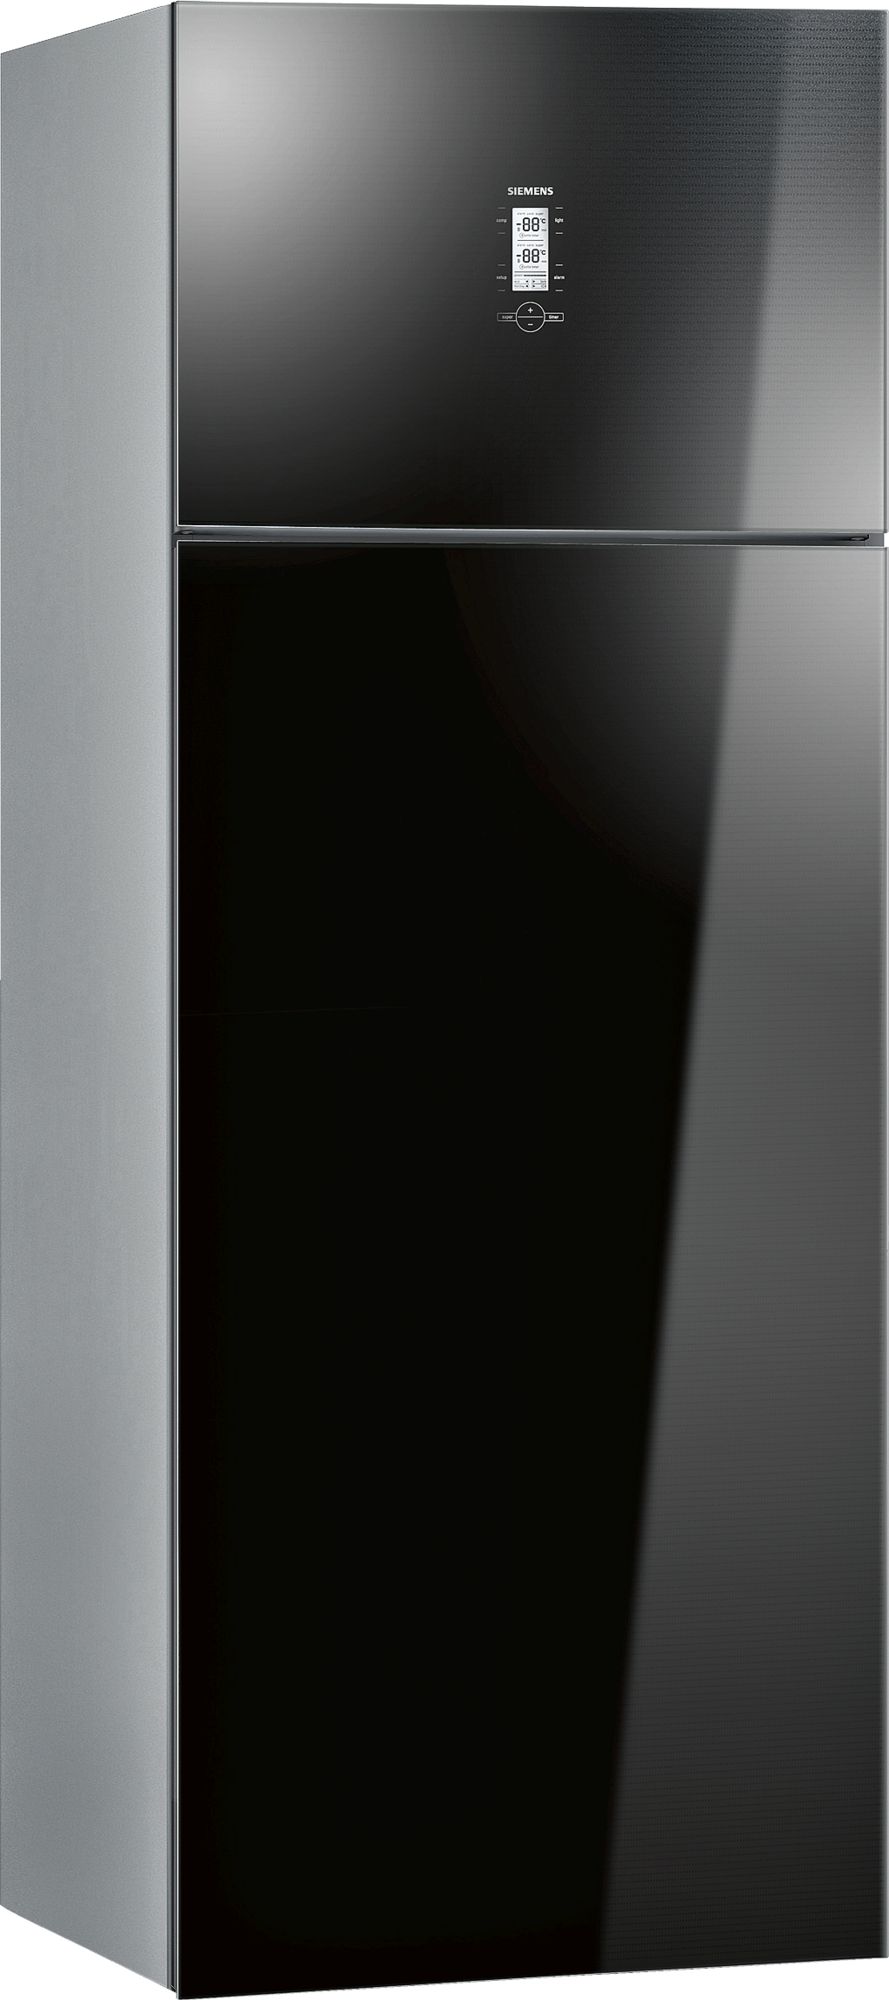 iQ500 Üstten Donduruculu Buzdolabı 186 x 70 cm siyah